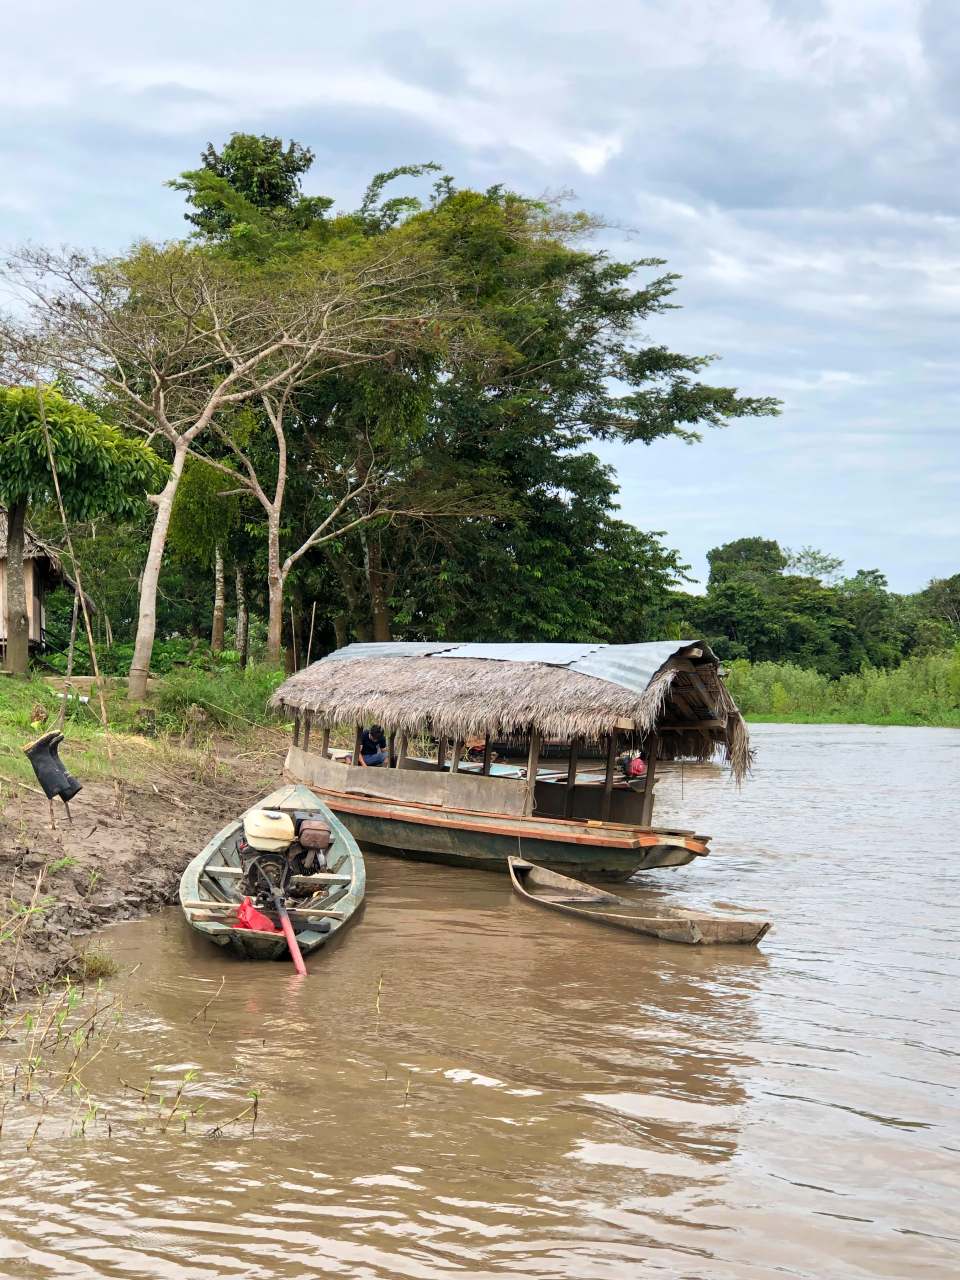 Croisière Amazonie Pérou